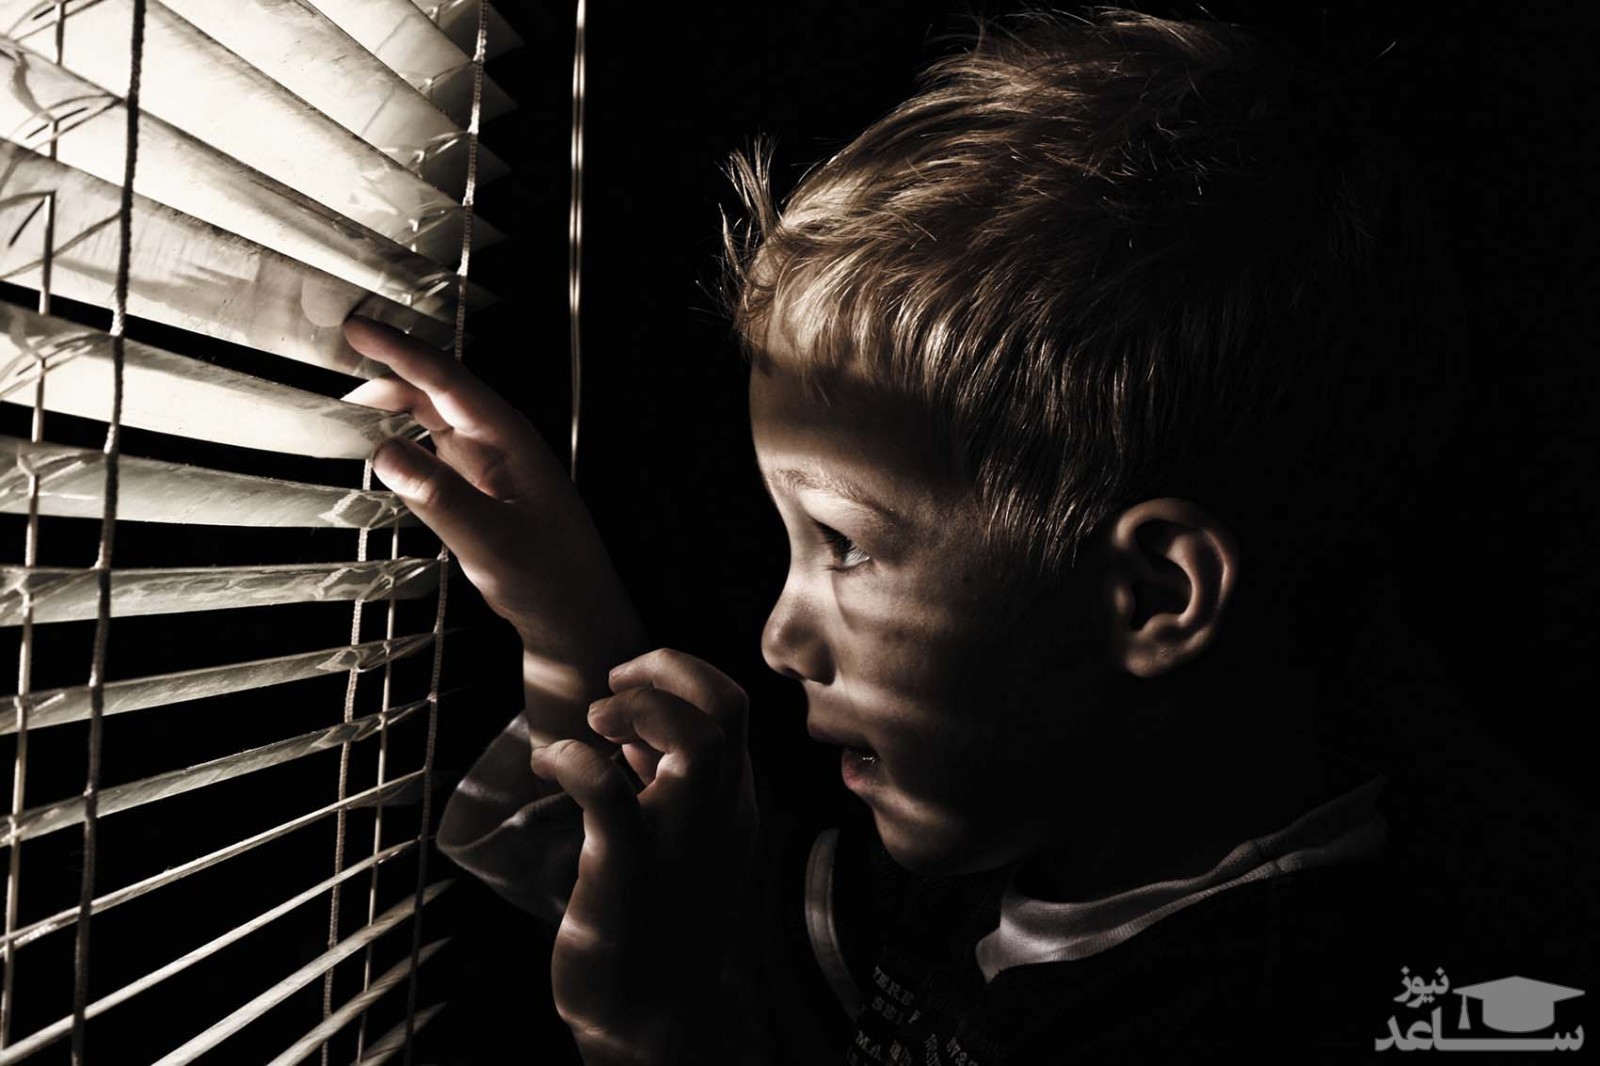 بچه ها چرا از تاریکی می ترسند؟